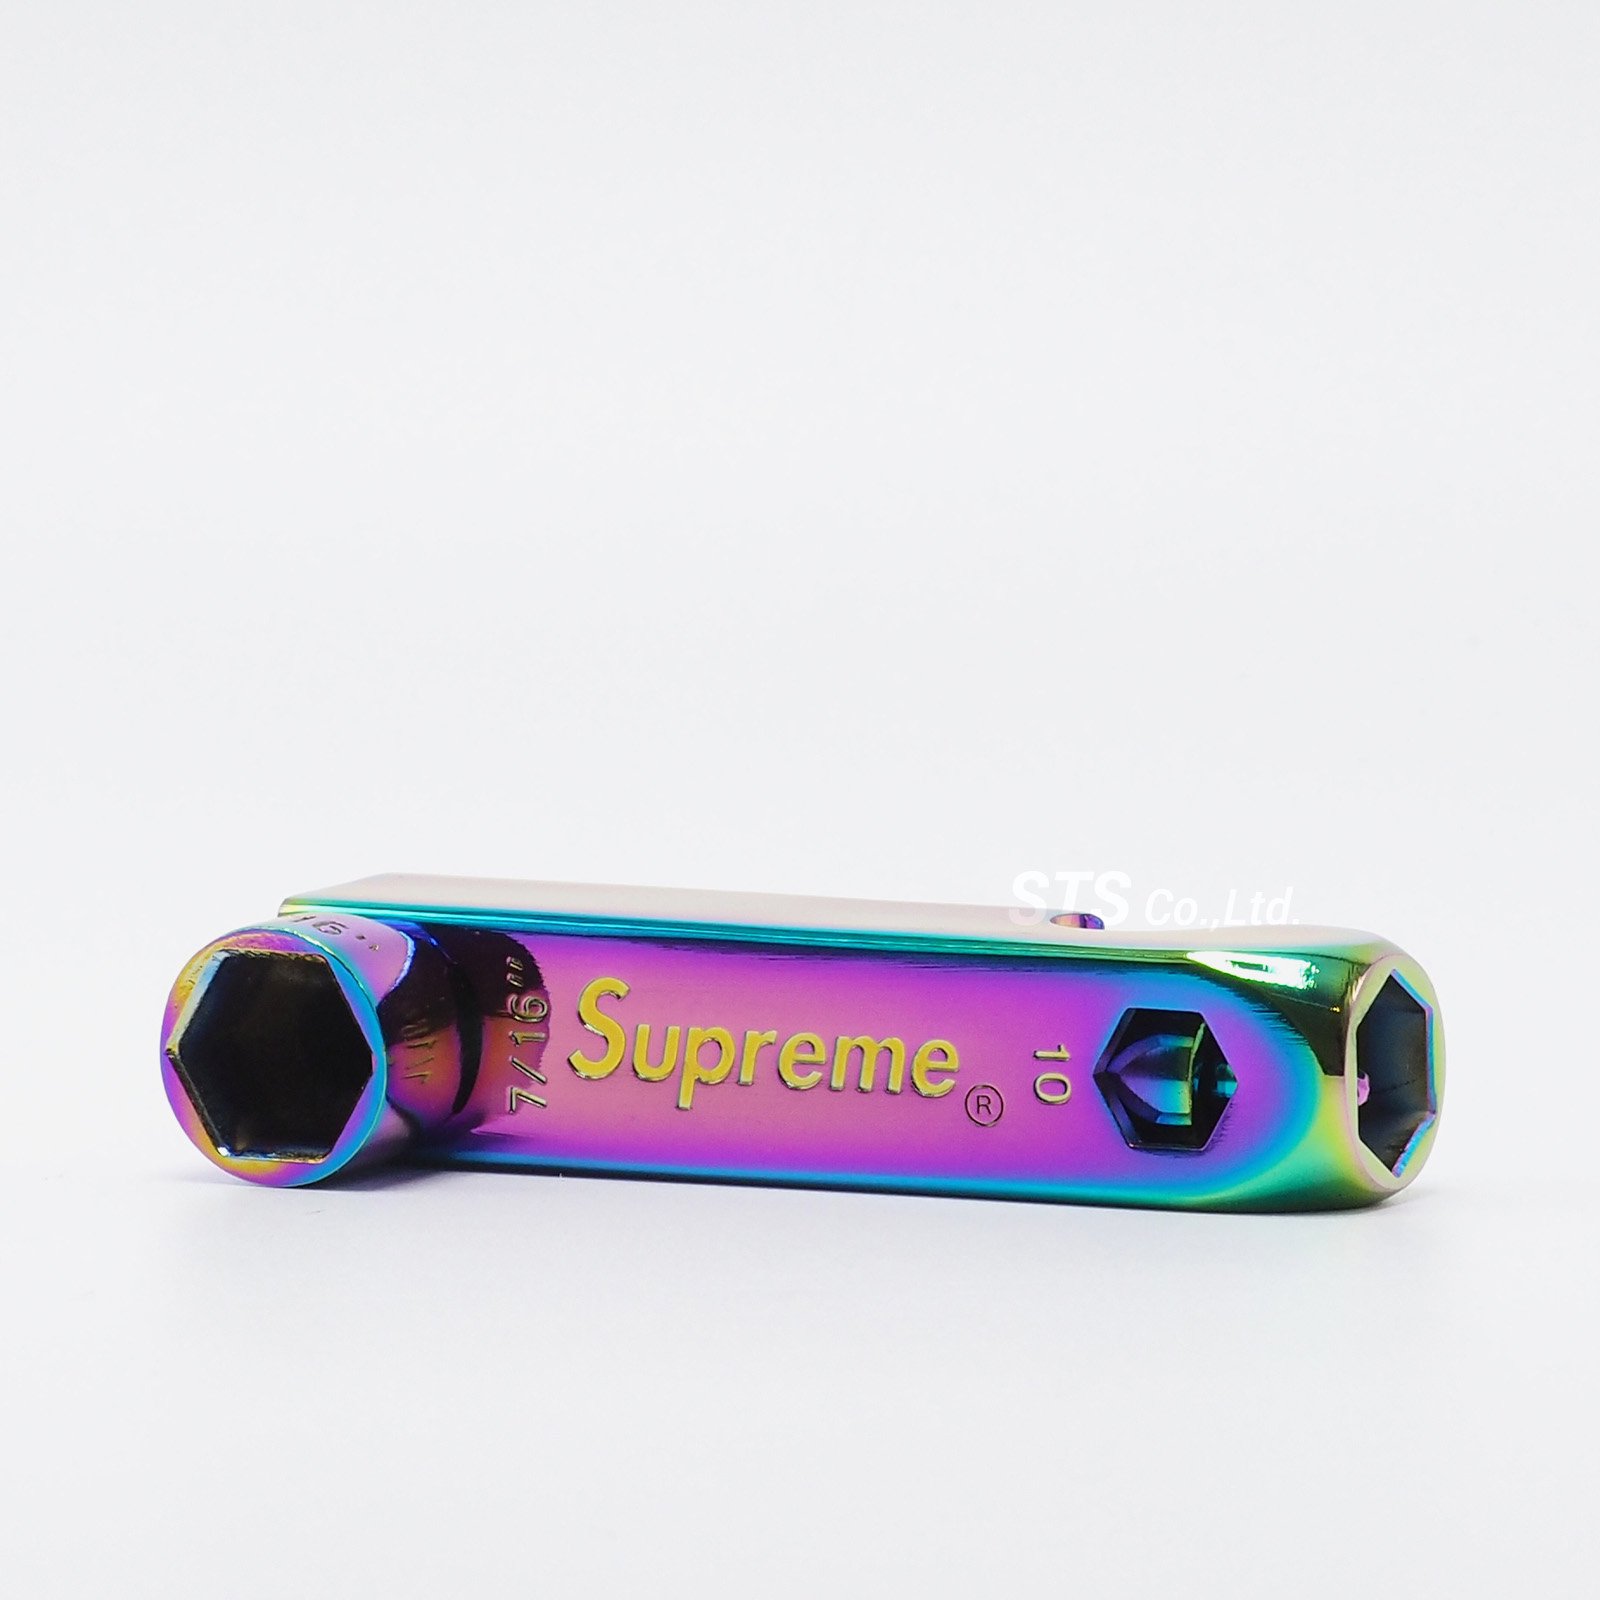 Supreme - Pipe Skate Key - UG.SHAFT